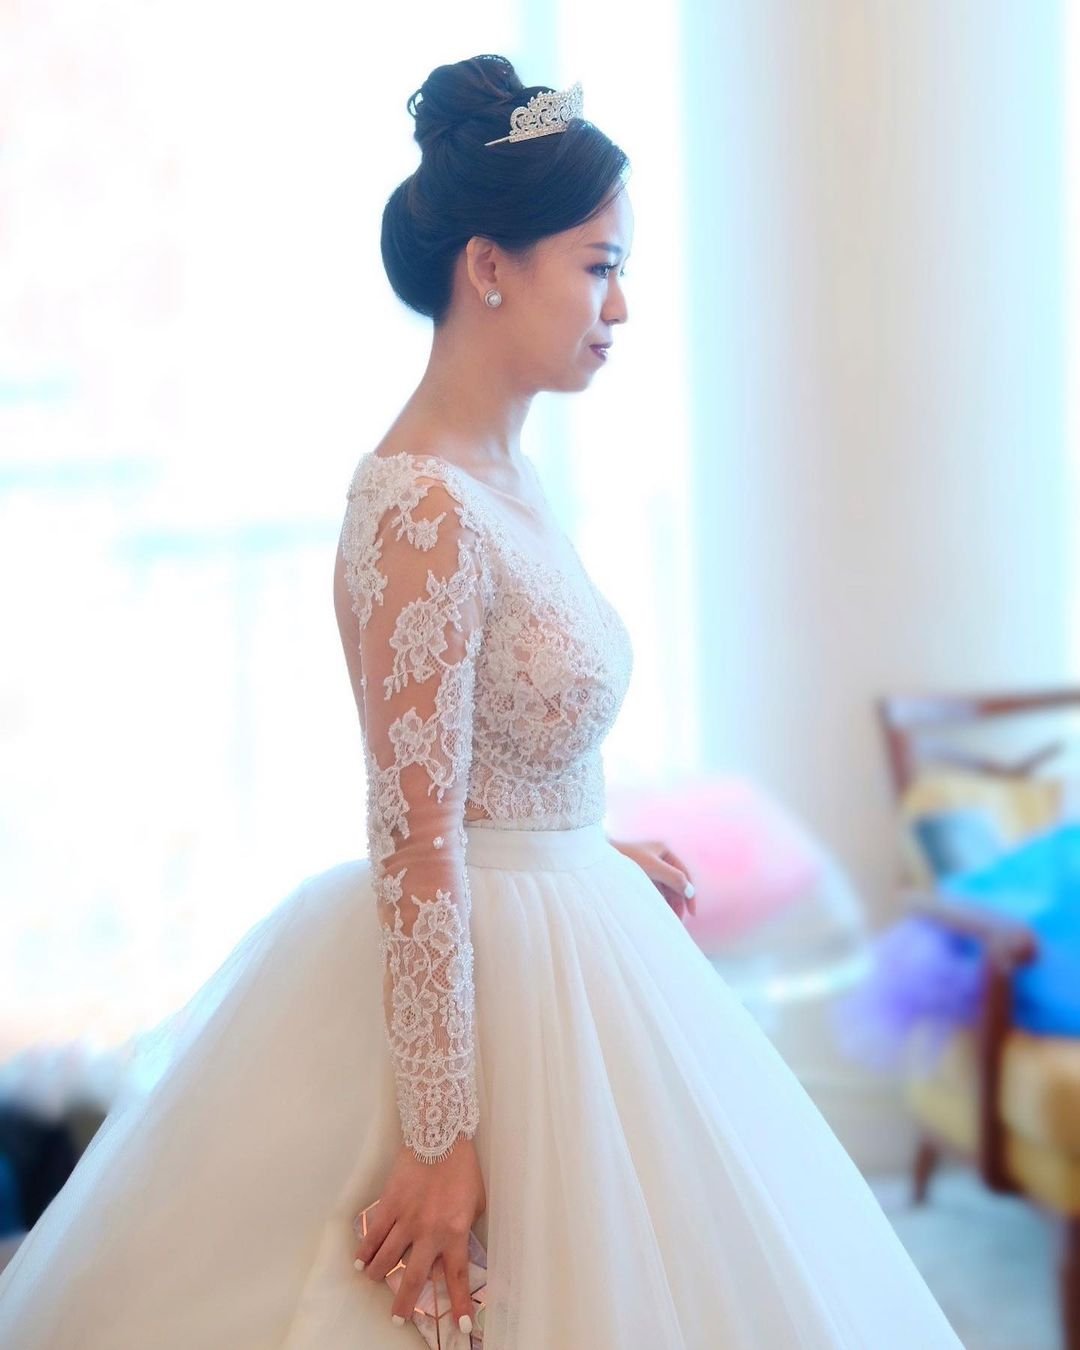 Off The Shoulder Wedding Dresses: 18 Bridal Looks